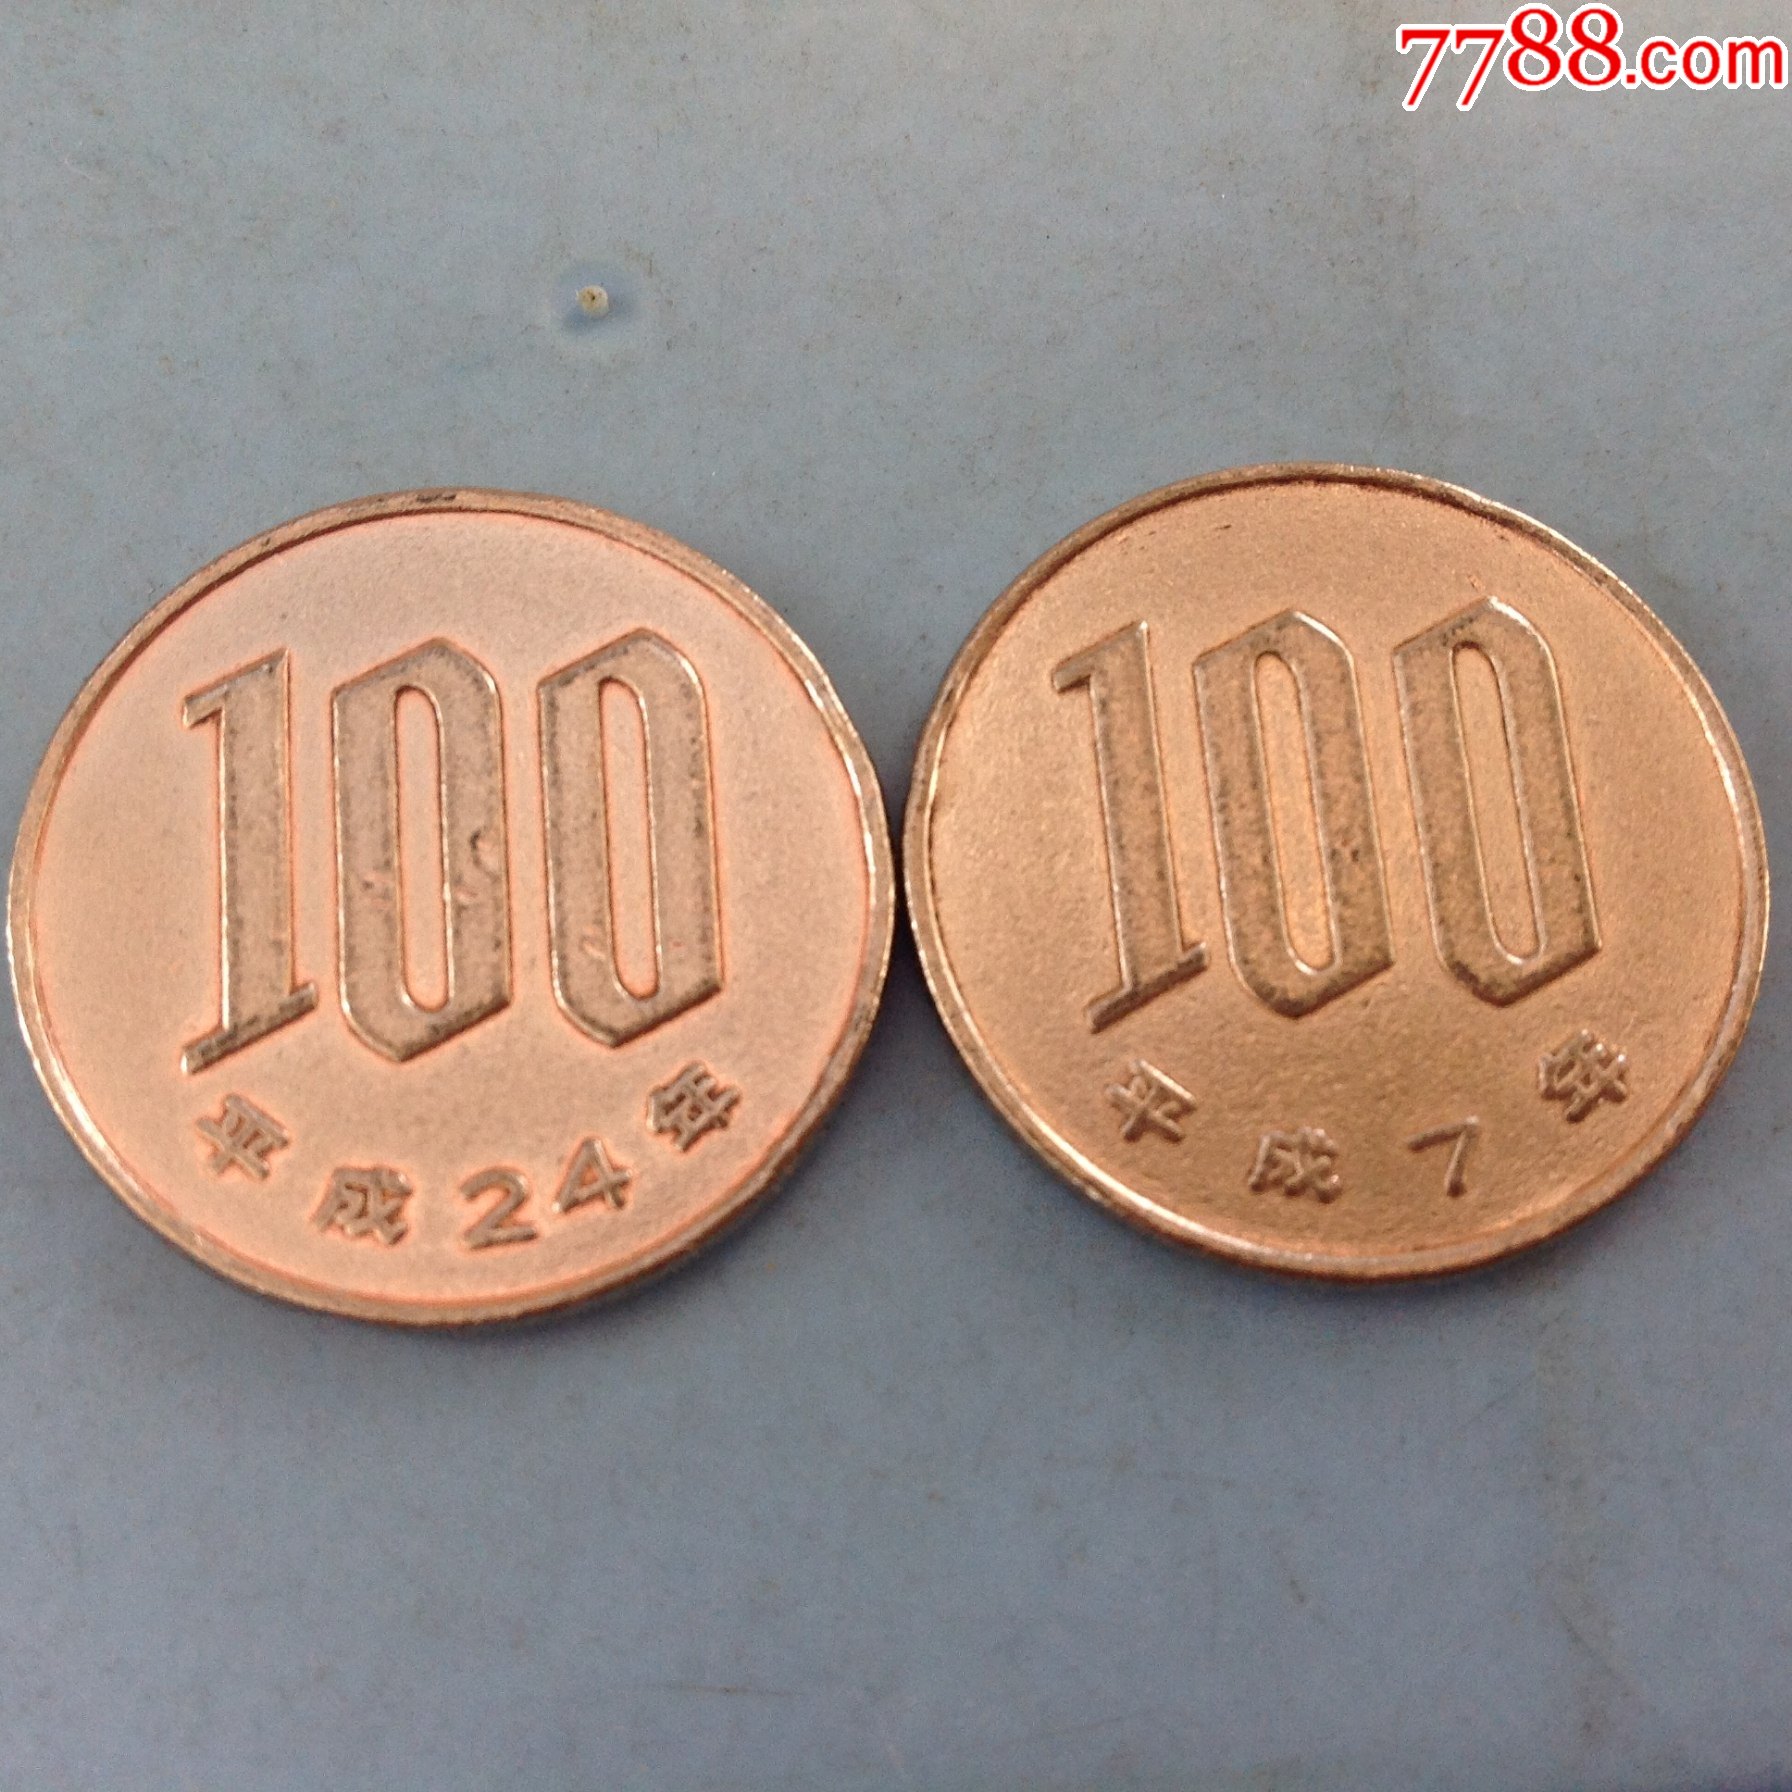 1000币等于多少缅甸元_比特币 中国市场规模 btc china_1000btc等于多少人民币